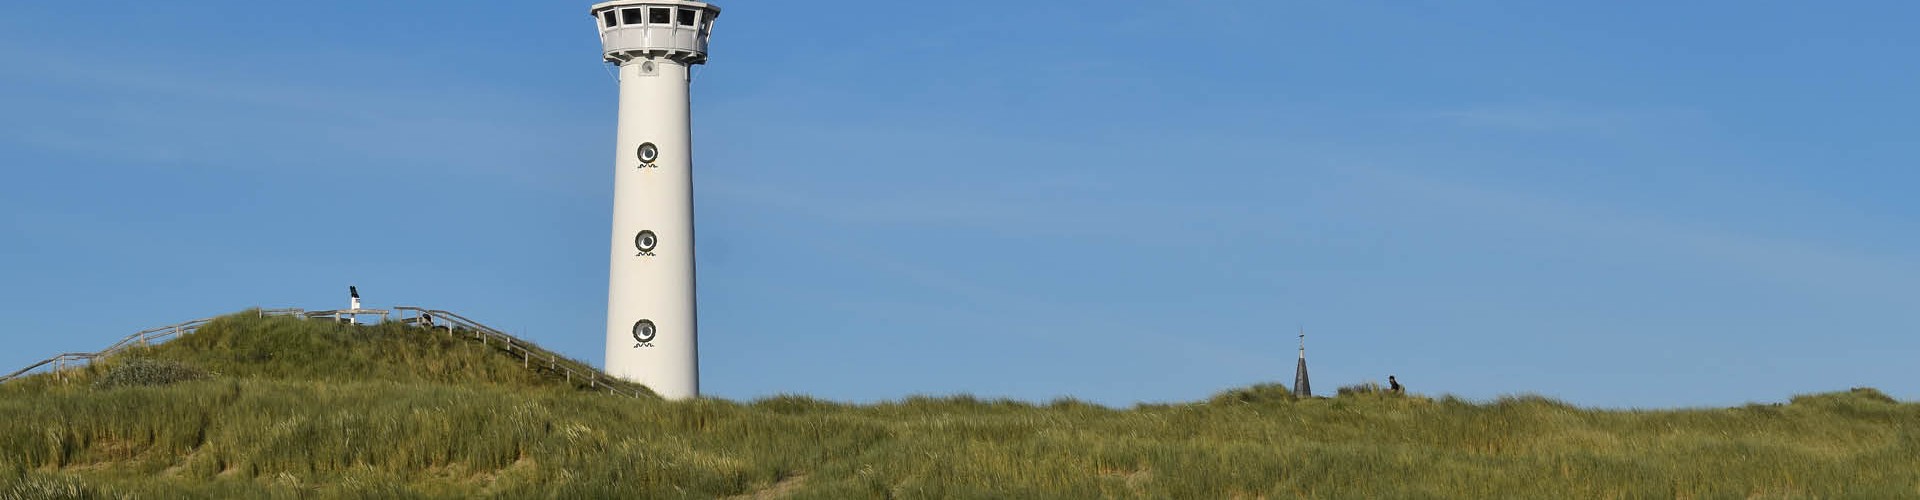 Golfzang - Vuurtoren en strand.jpg